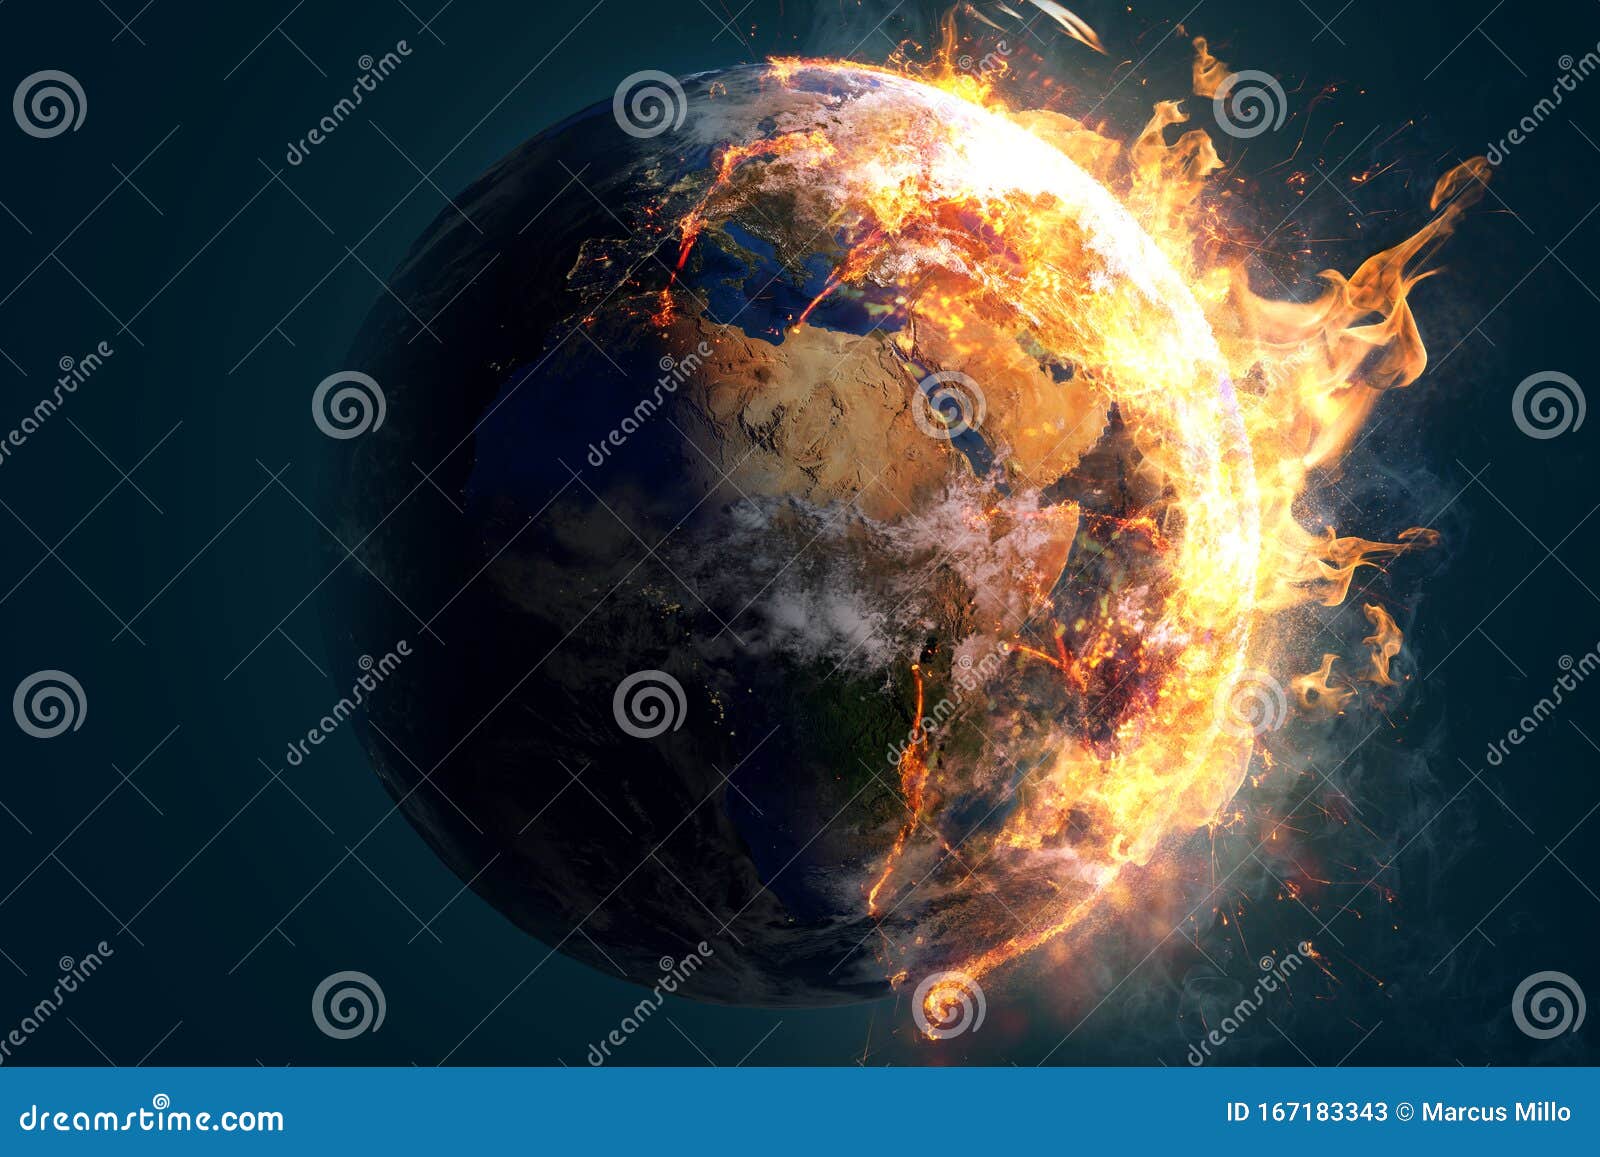 burning world flames fire environmental destruction